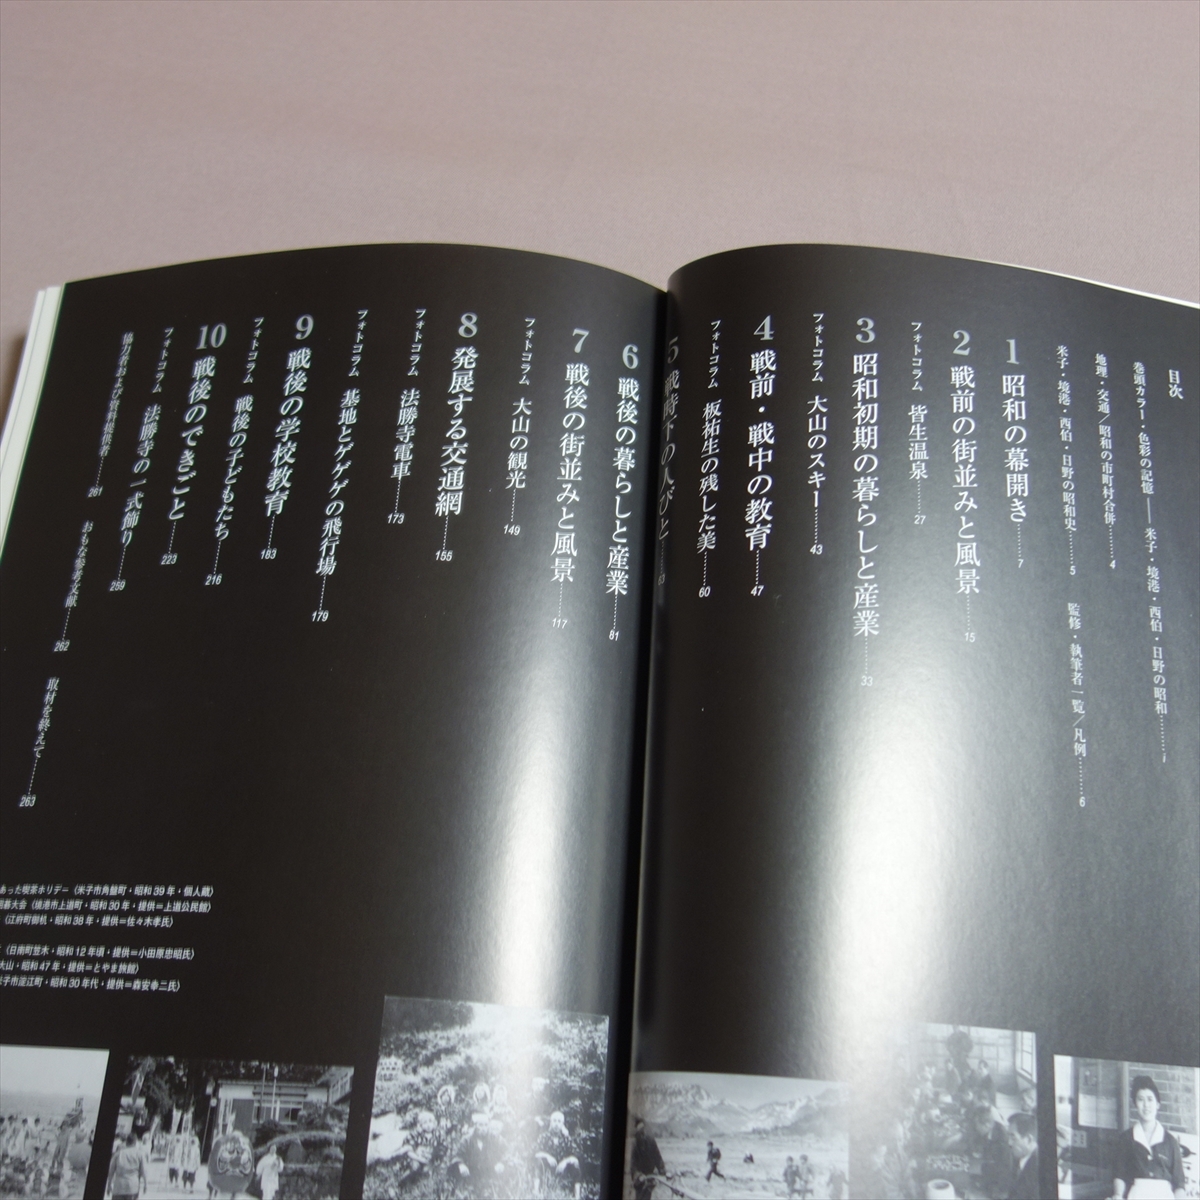 2012年 米子・境港・西伯・日野の昭和 写真アルバム 樹林舎 鳥取県教科図書販売_画像6